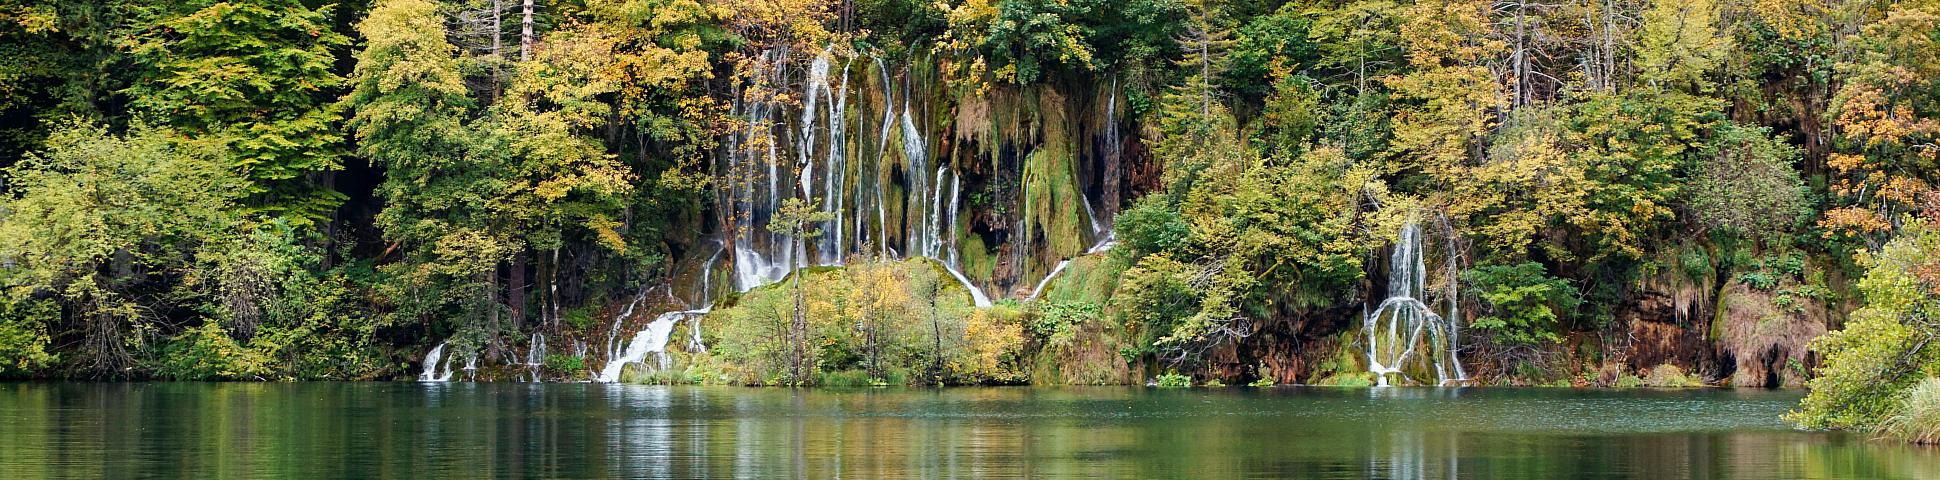 Plitvice National Park in Croatia